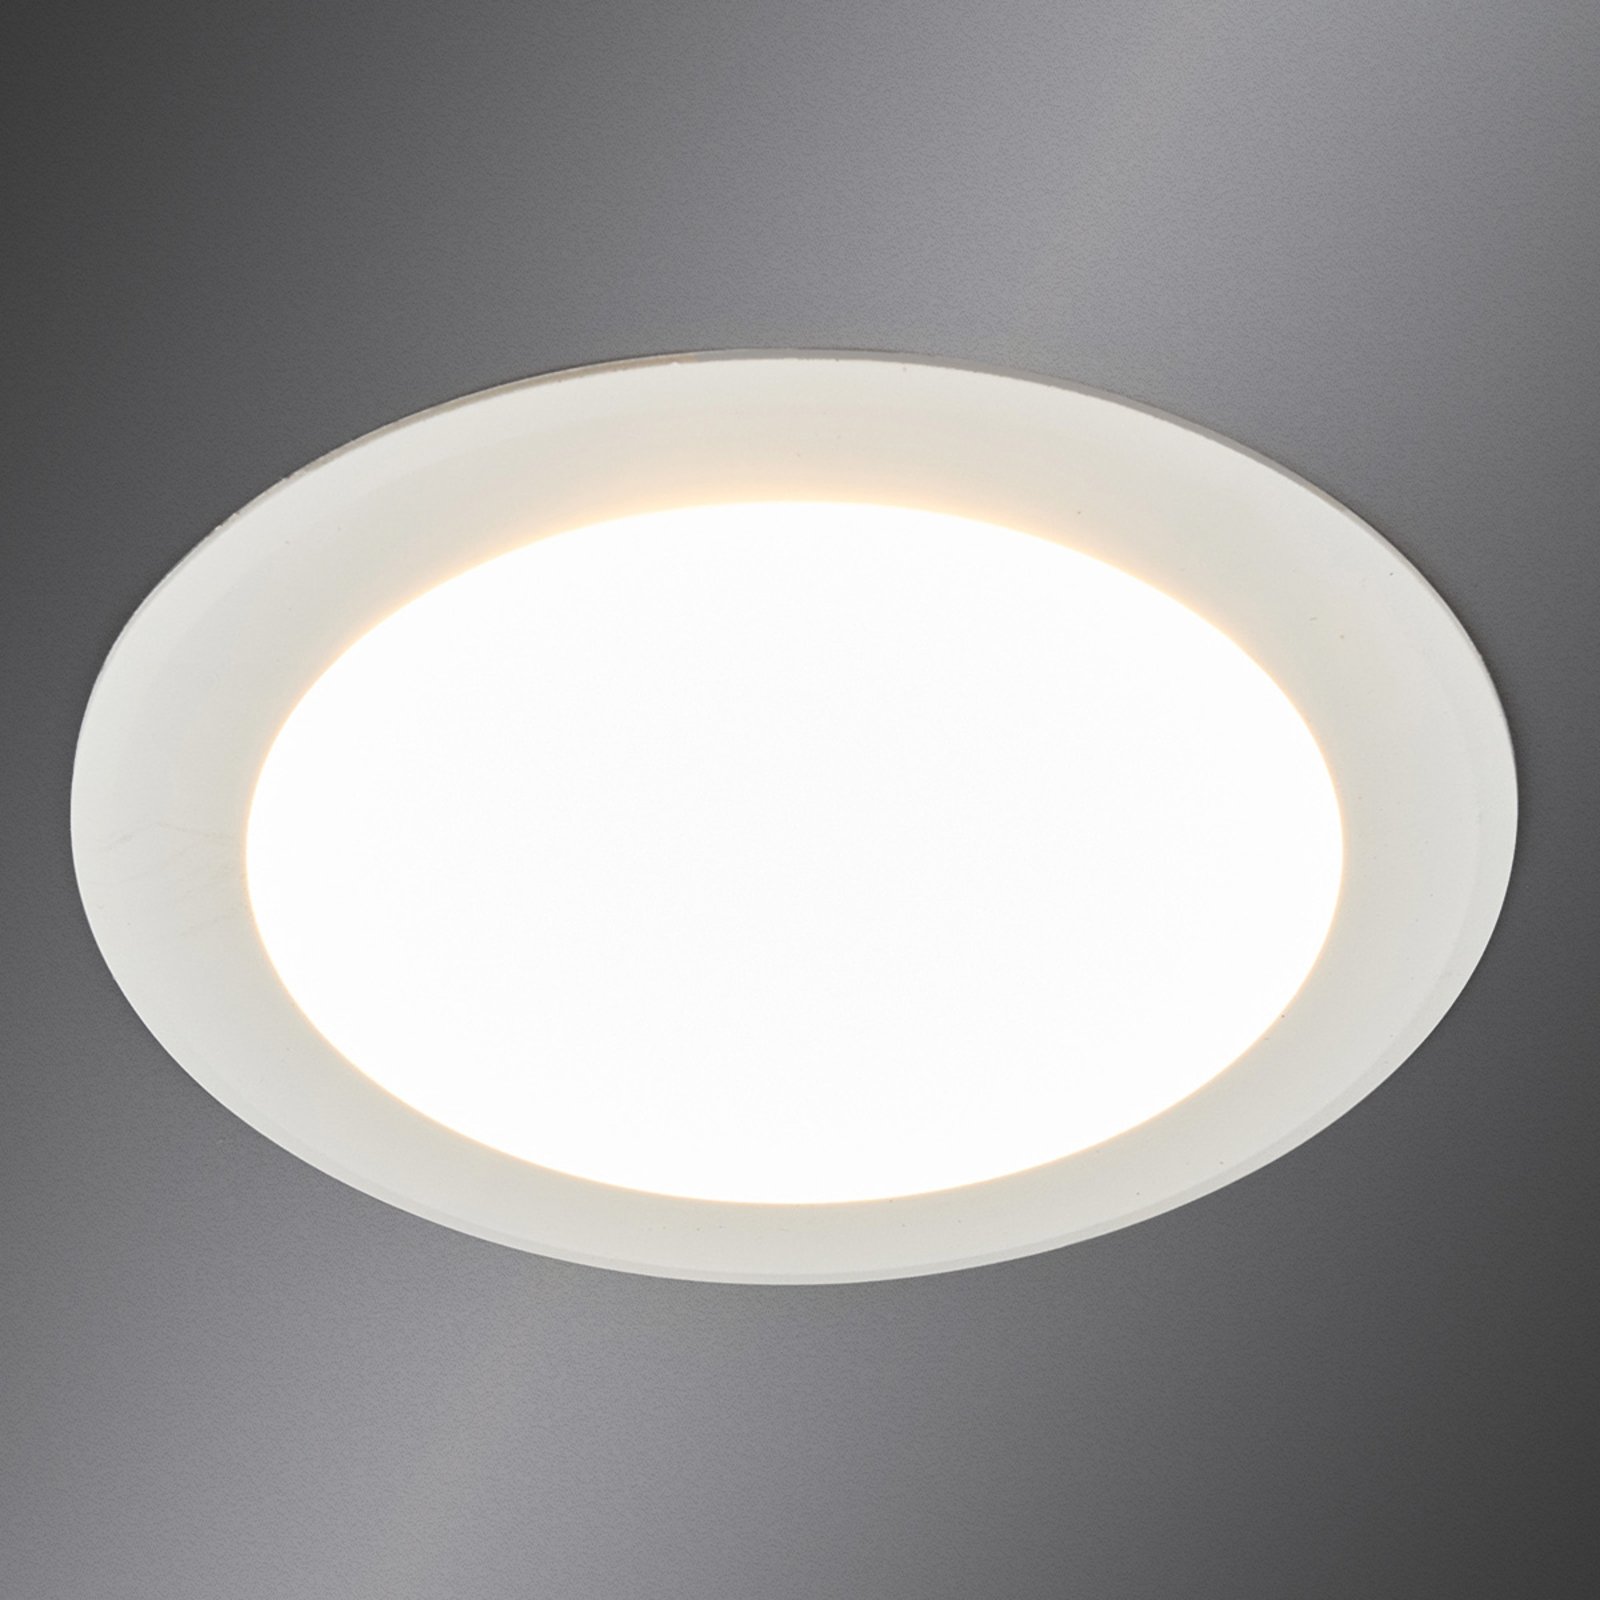 Arian - LED-indbygningsspot i hvid, 11,3 cm 9W